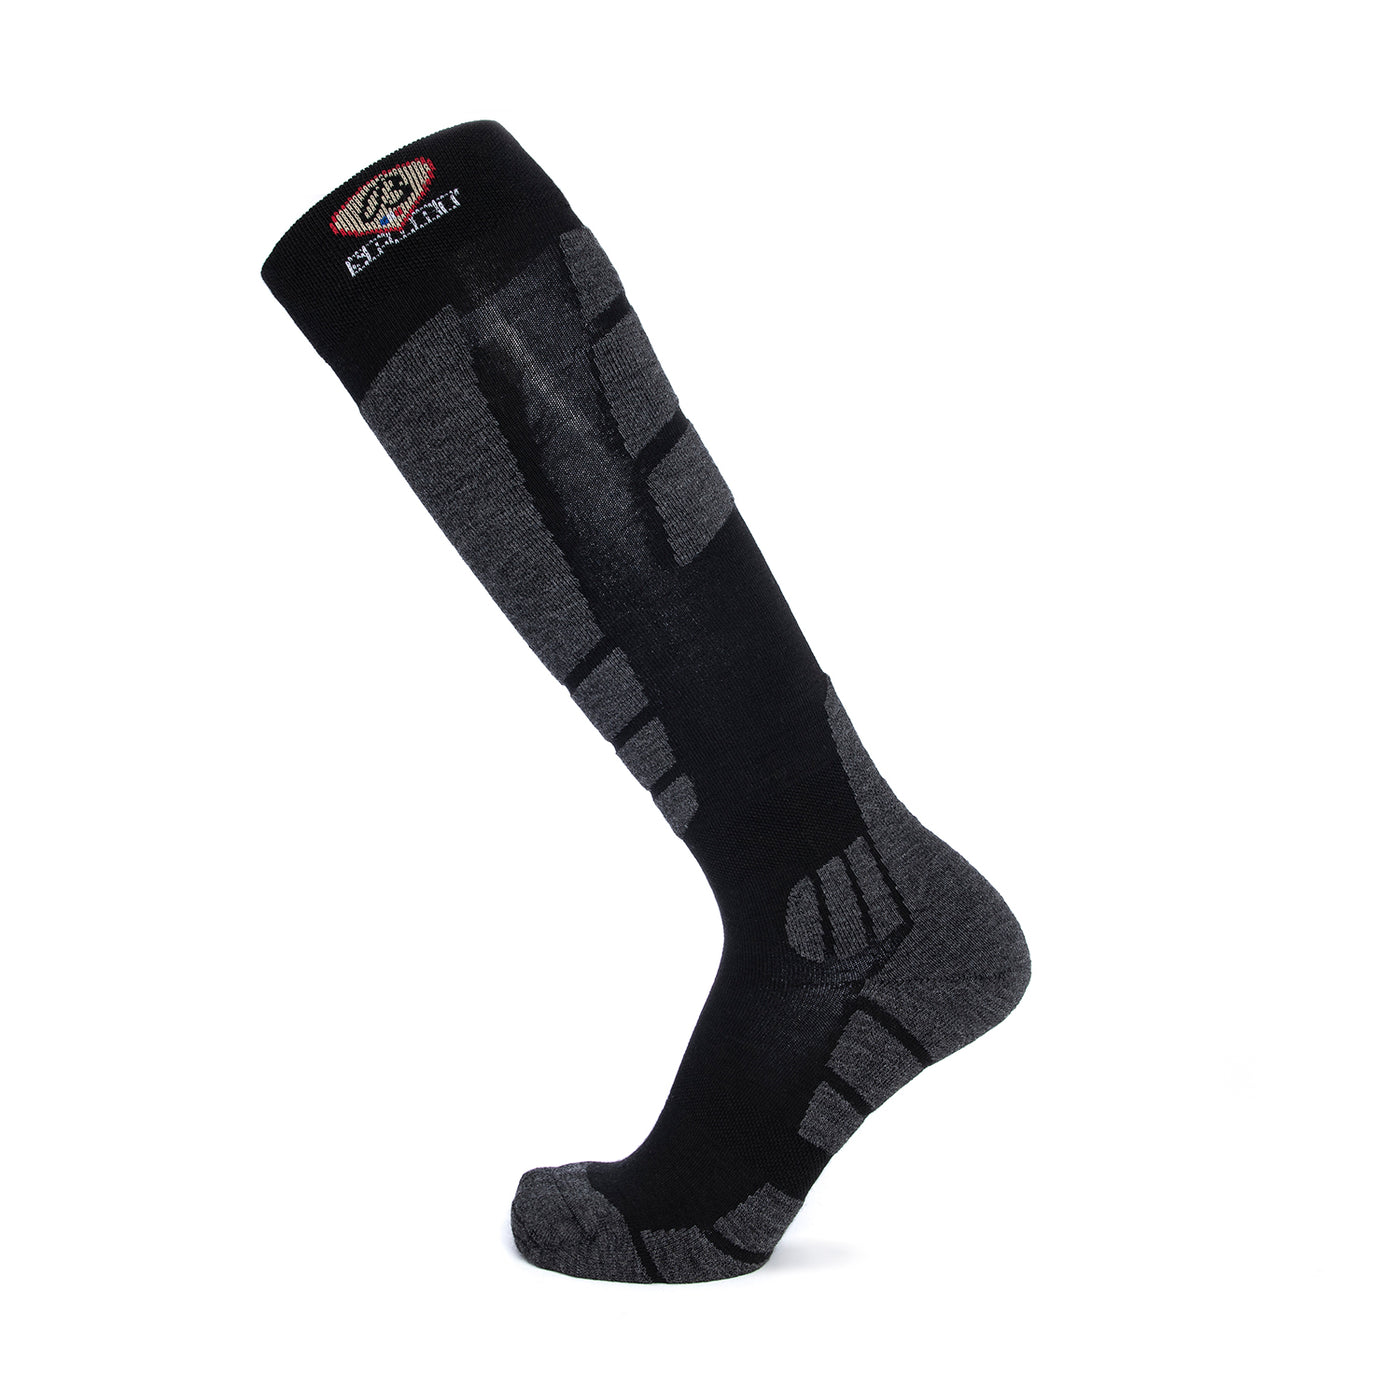 Black-gray ski socks